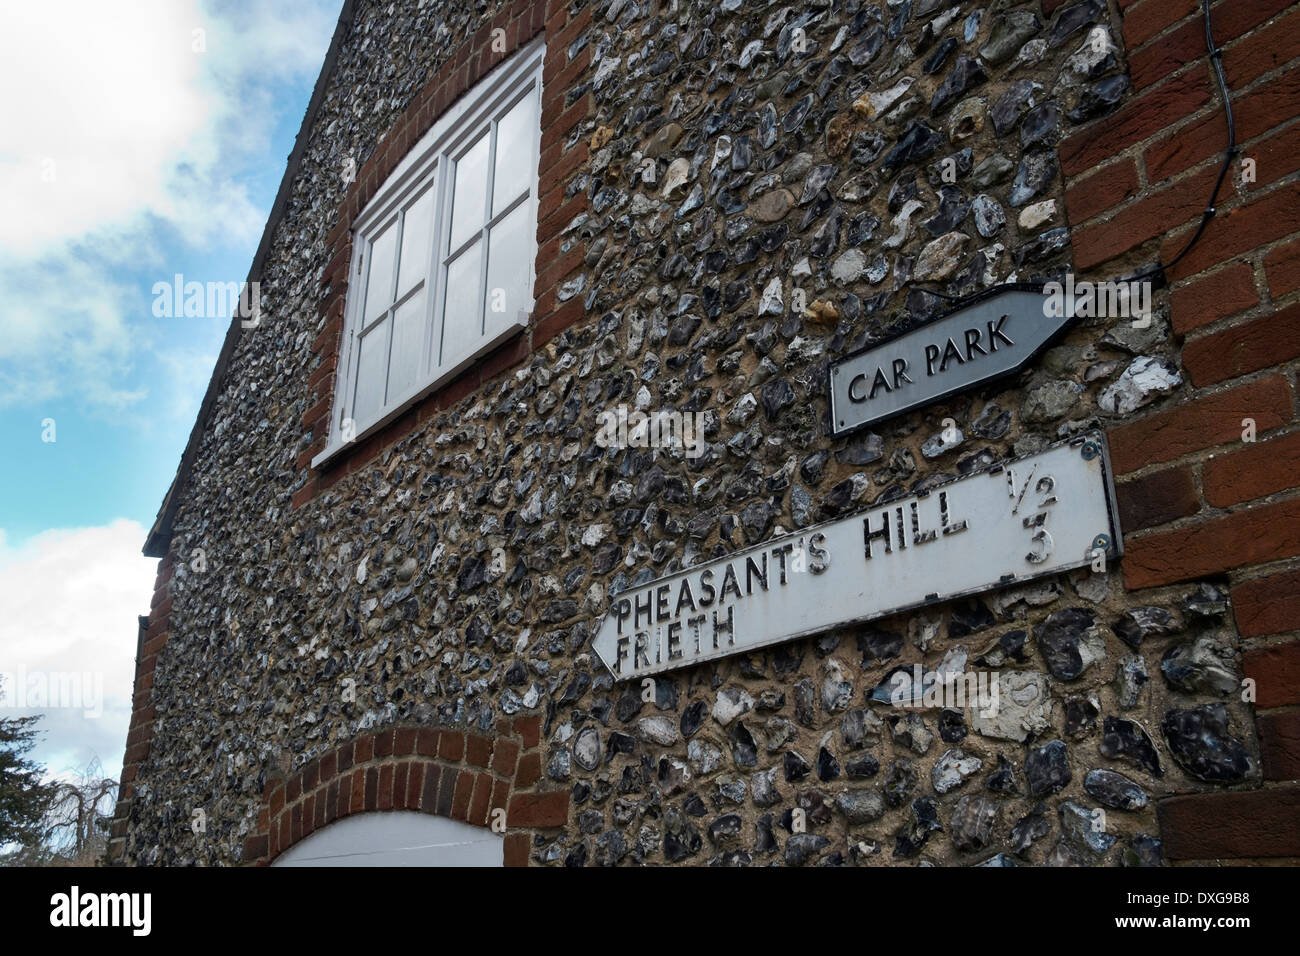 Vieille route et parking signe sur le mur de briques et silex construit une maison fortifiée Hambleden Bucks village UK Banque D'Images